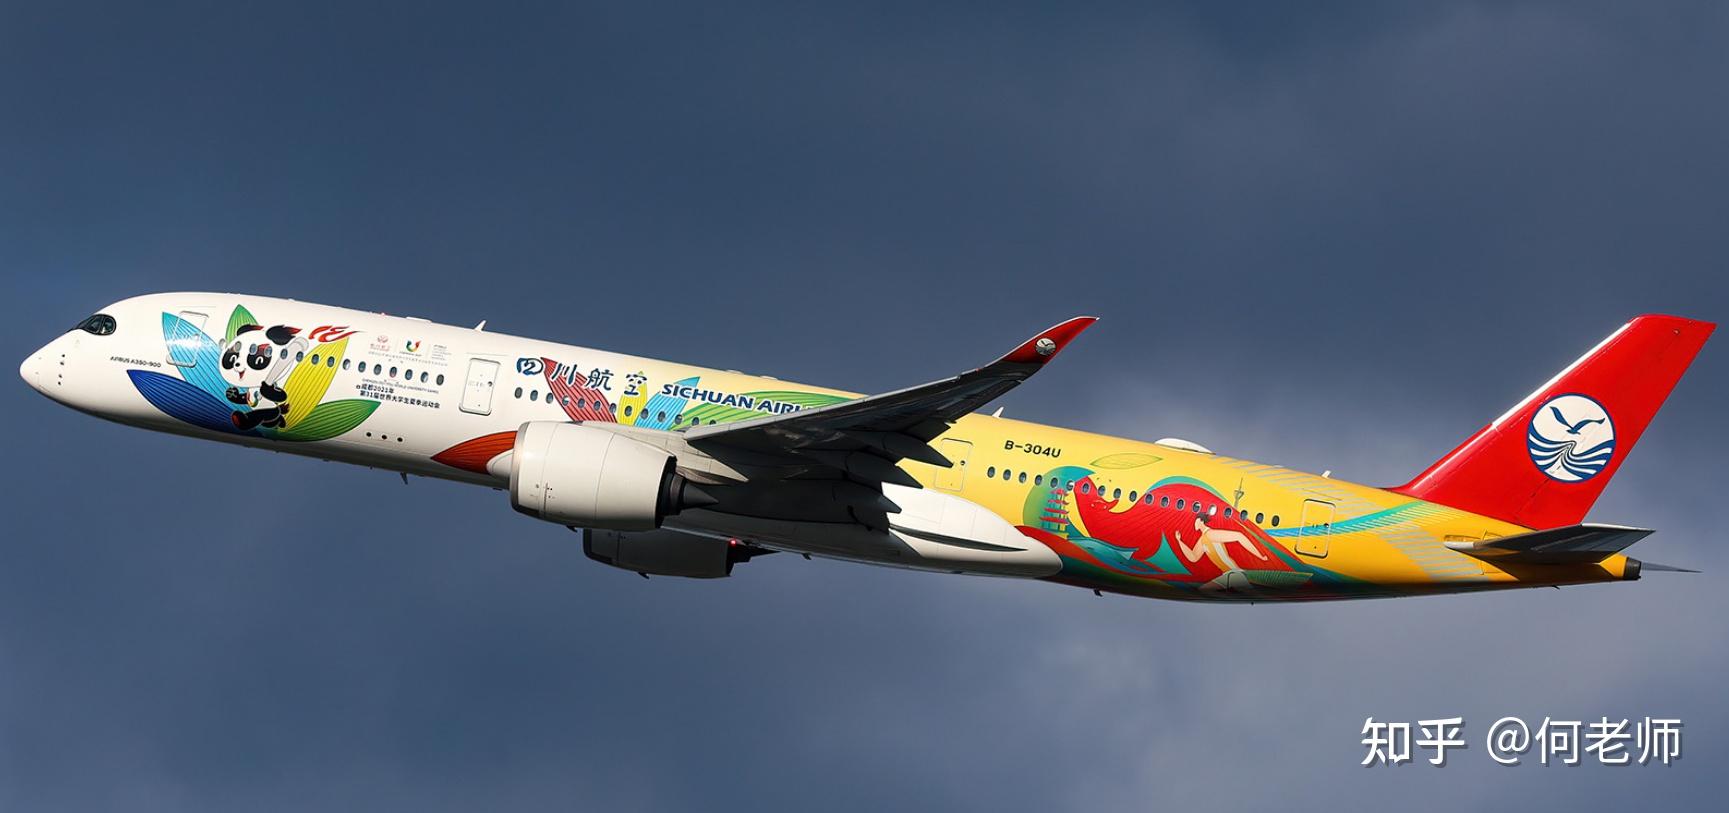 国内民航飞机彩绘涂装大全(20230820)